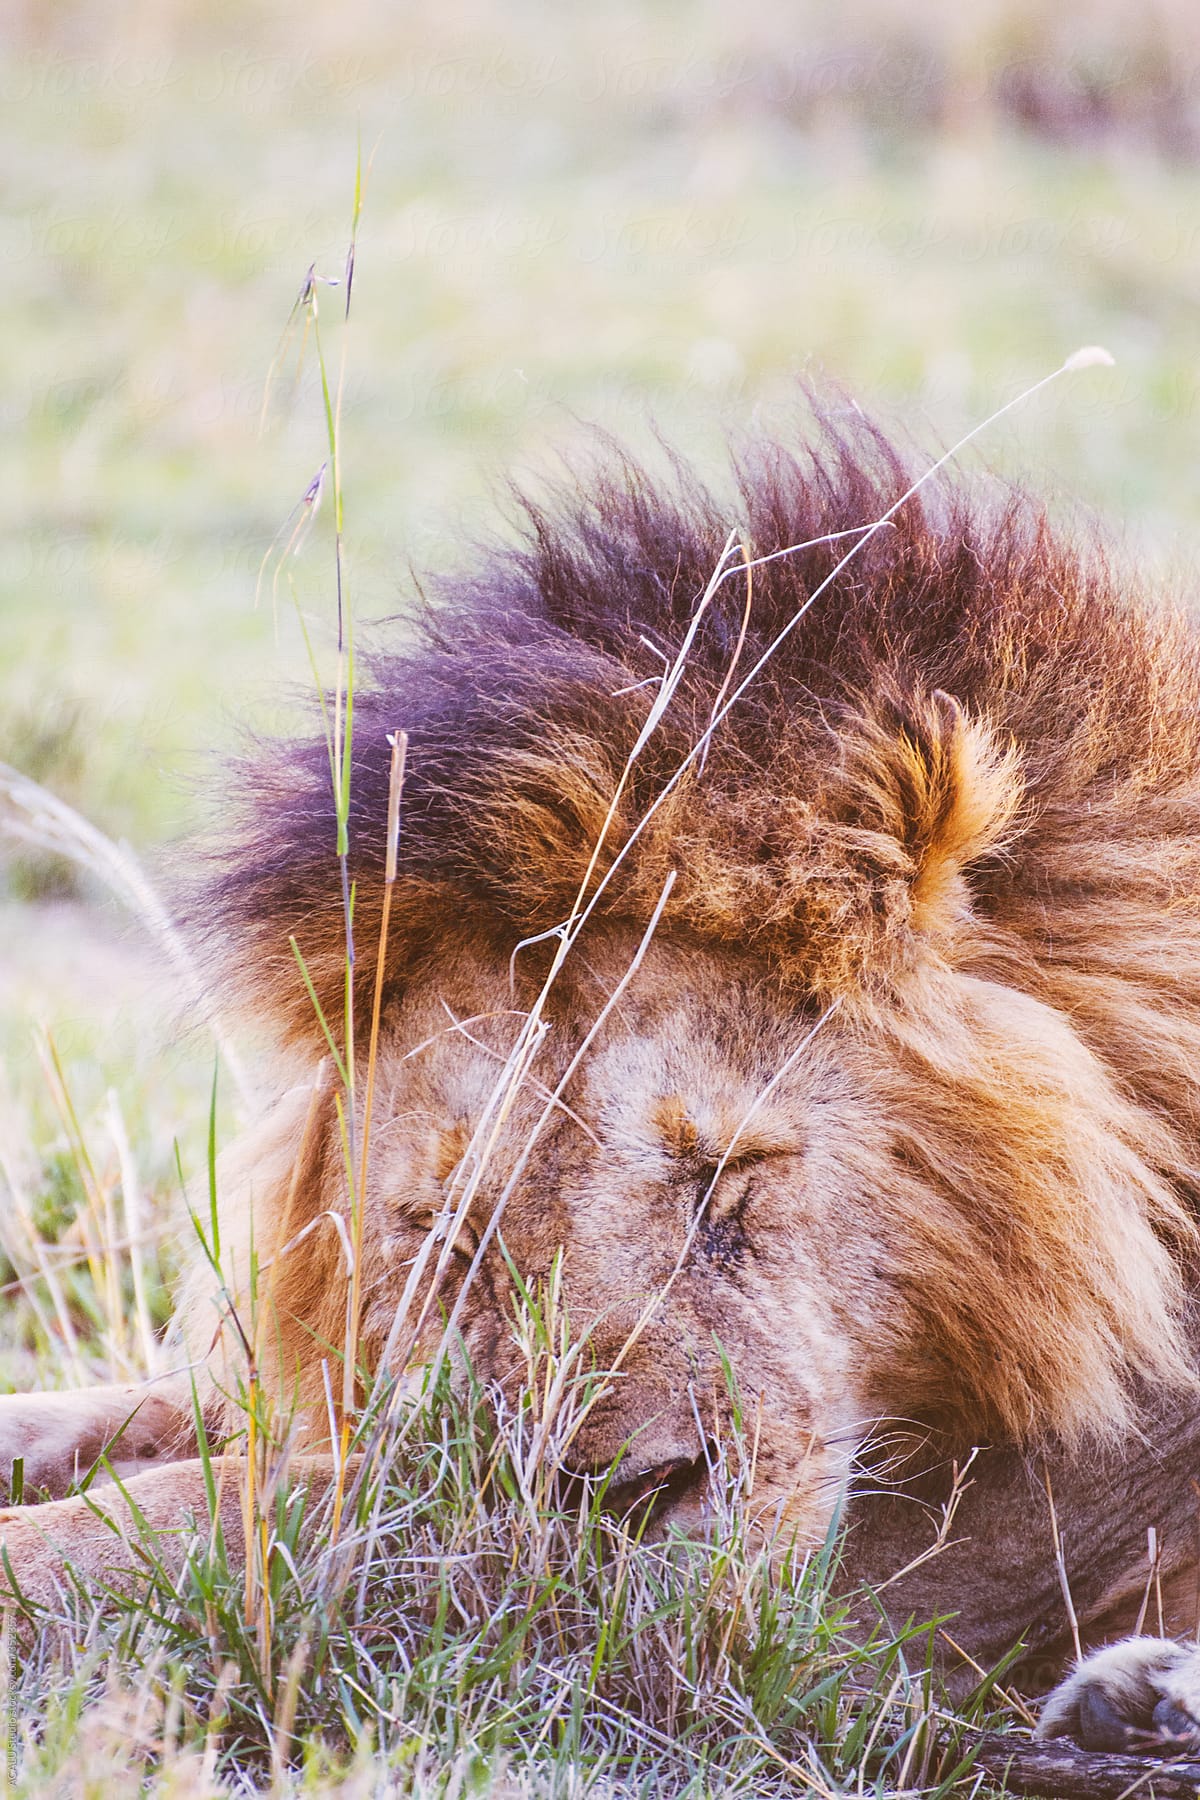 Lion King sleeping